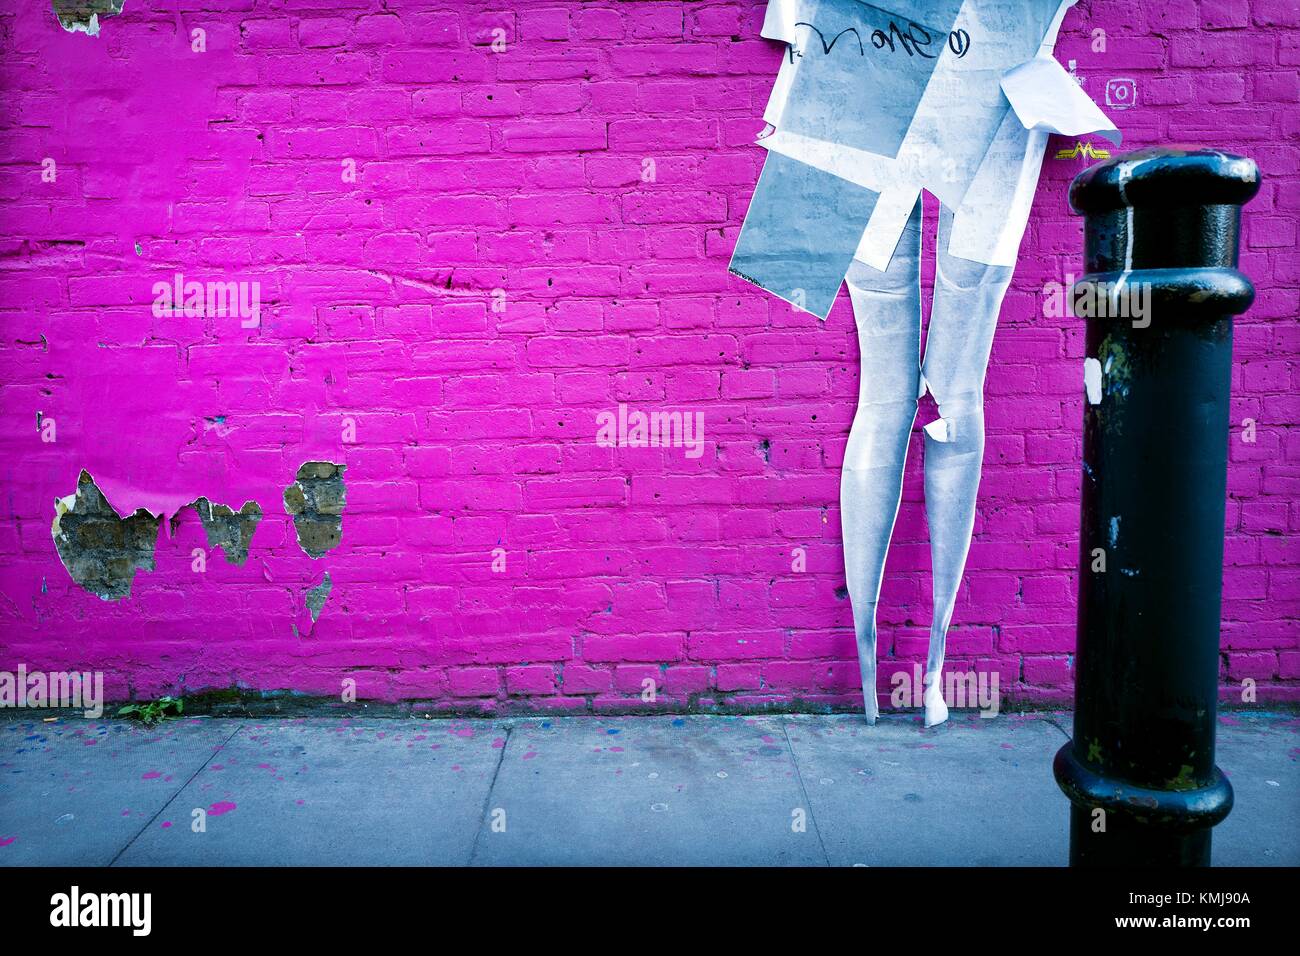 Pared pintada color fucsia con un graffiti de las piernas de una mujer en una calle. Hamburg St., East End, London, UK, Europa. Stock Photo